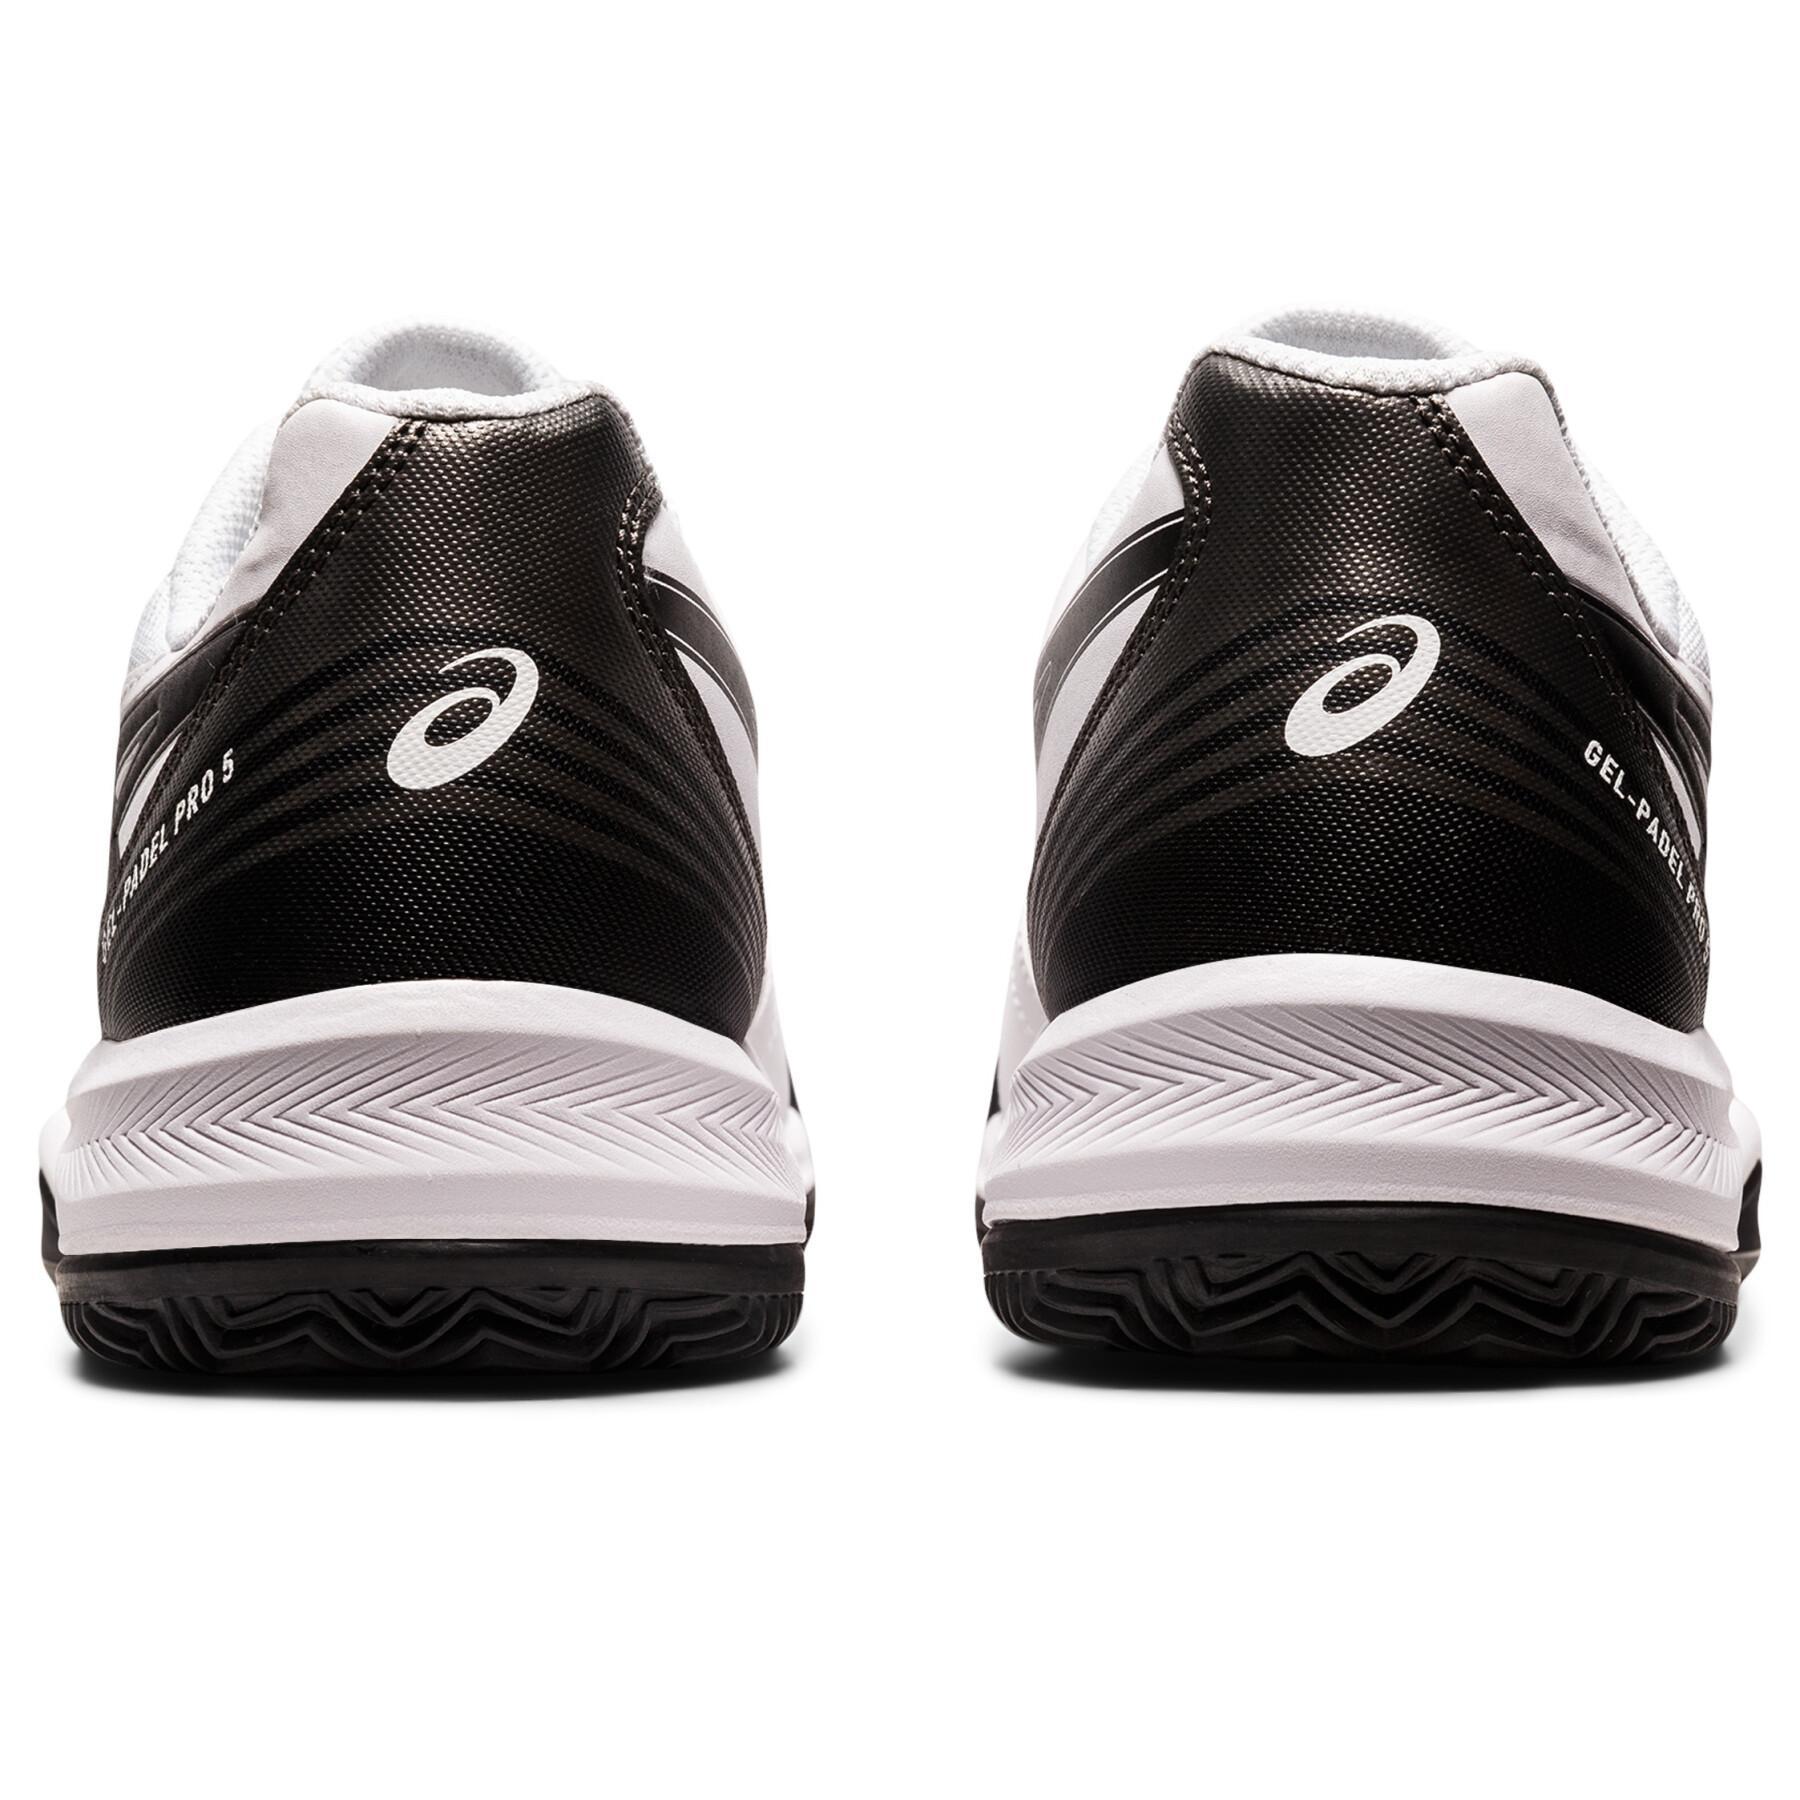 Schoenen van padel Asics Gel-Padel Pro 5